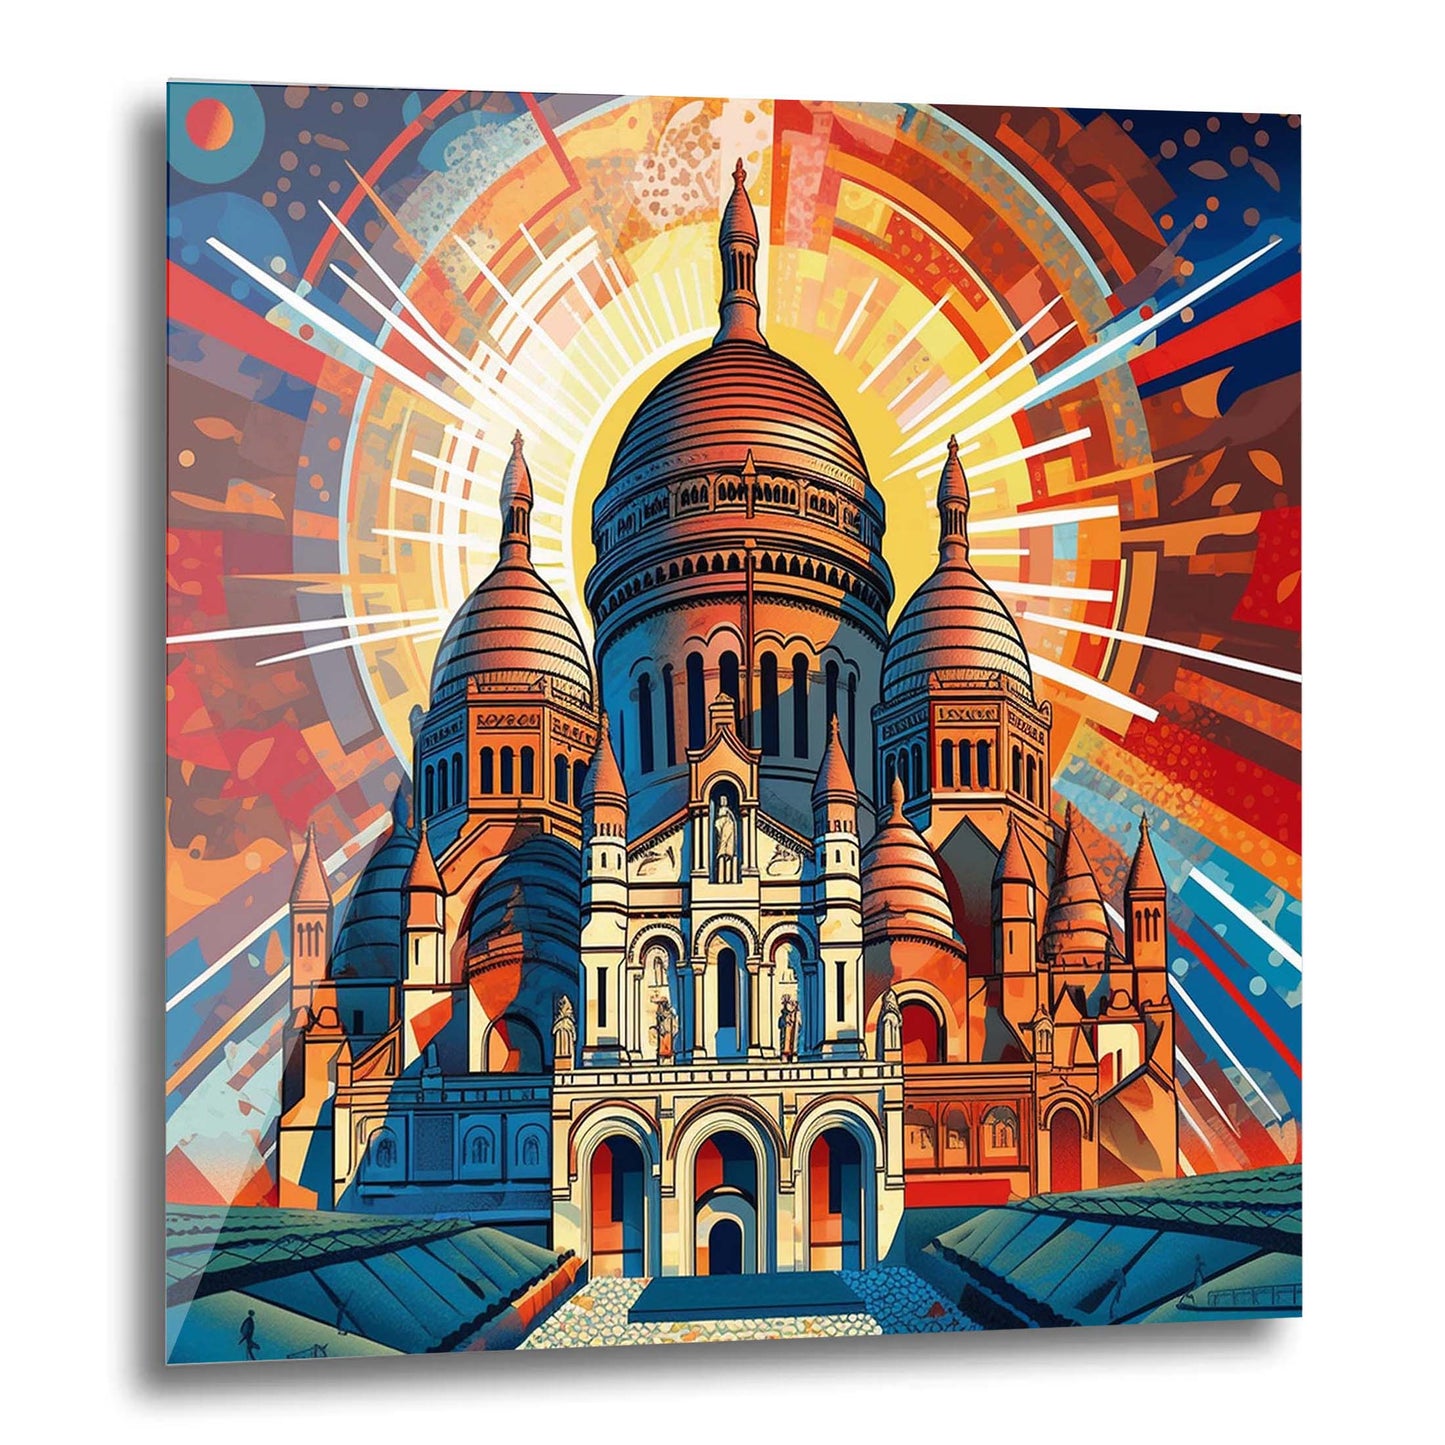 Paris Sacre Coeur - Wandbild in der Stilrichtung des Futurismus